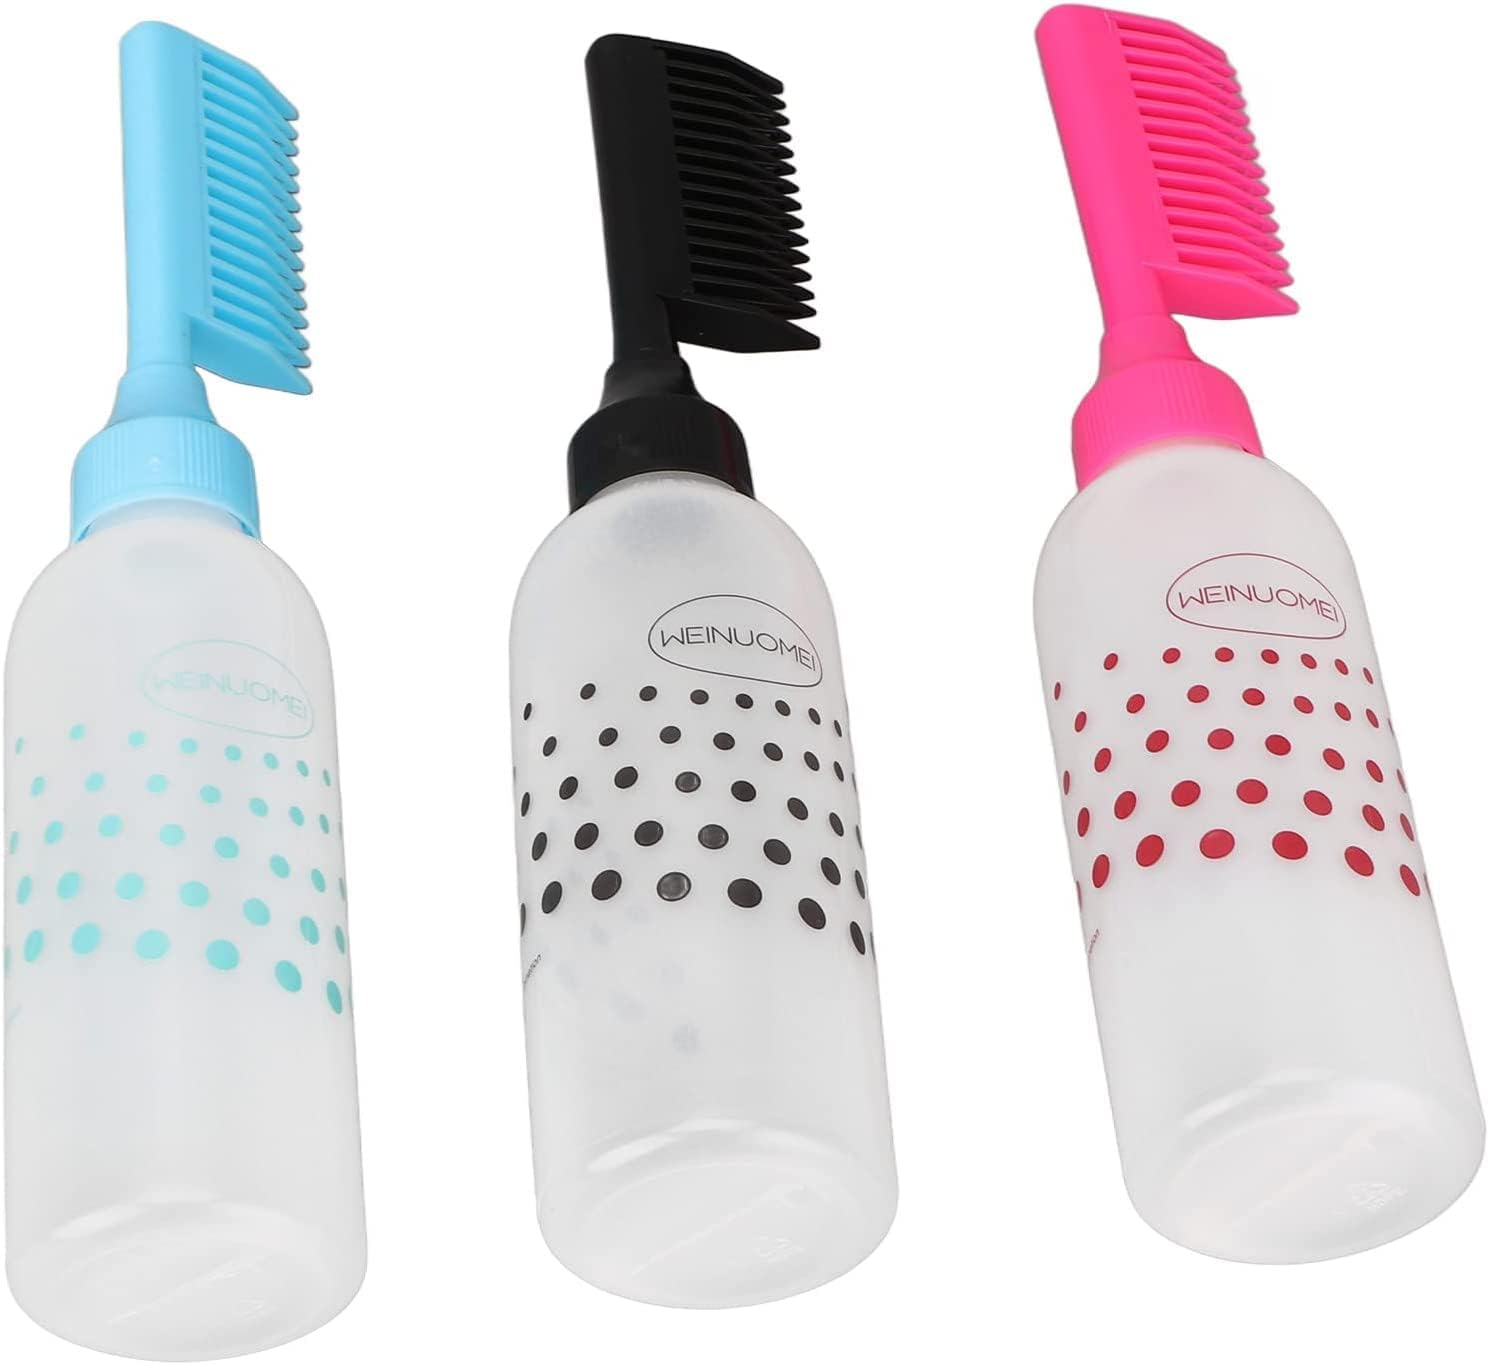 3 قطع من زجاجات توزيع الشعر المشط، زجاجة بلاستيكية شفافة بتصميم مريح جدا جدا لتلوين الشعر والشامبو